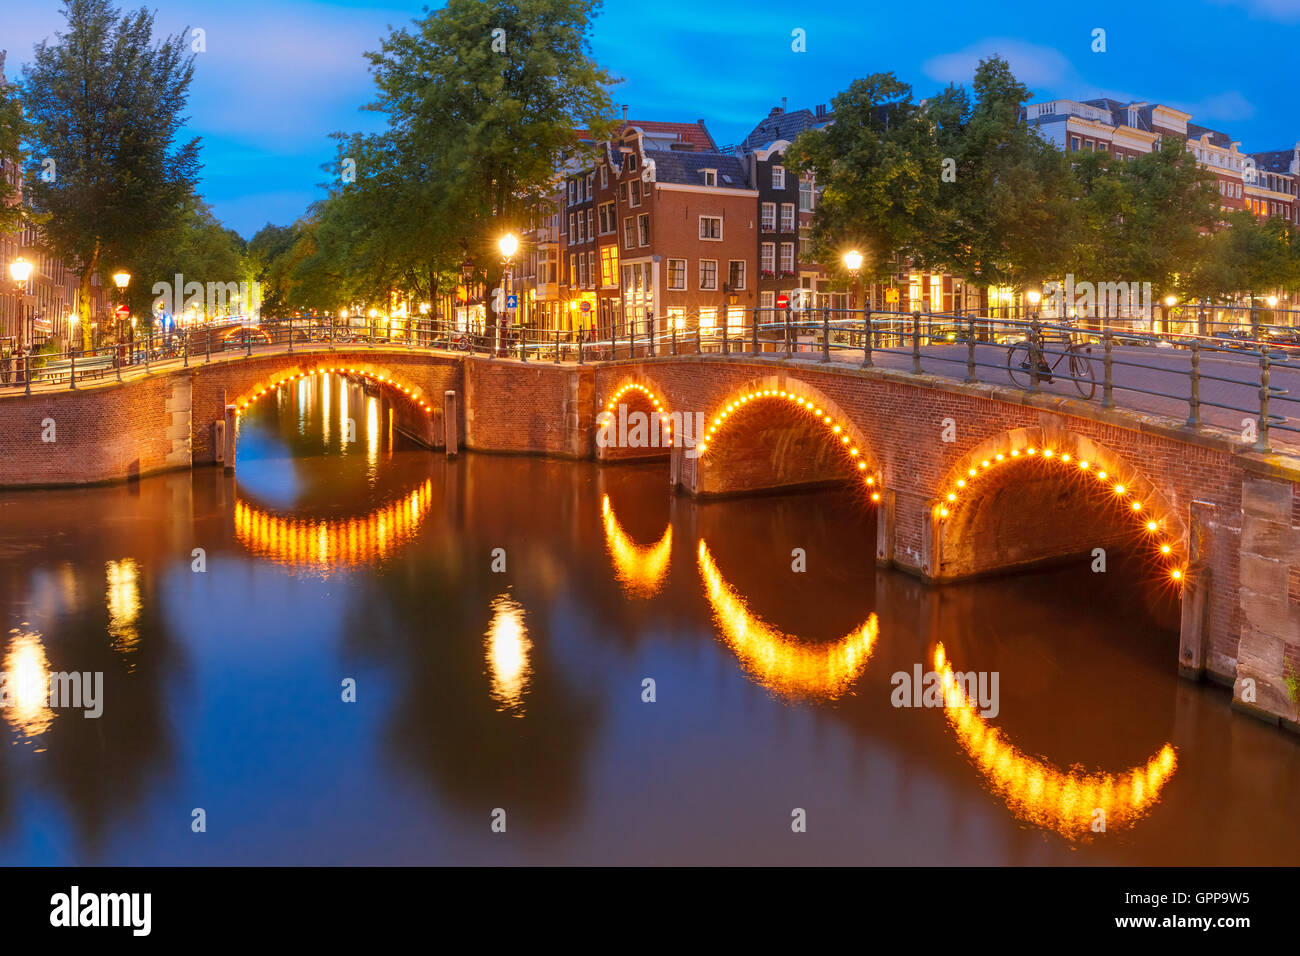 Notte Vista sulla città di Amsterdam canal e ponte Foto Stock